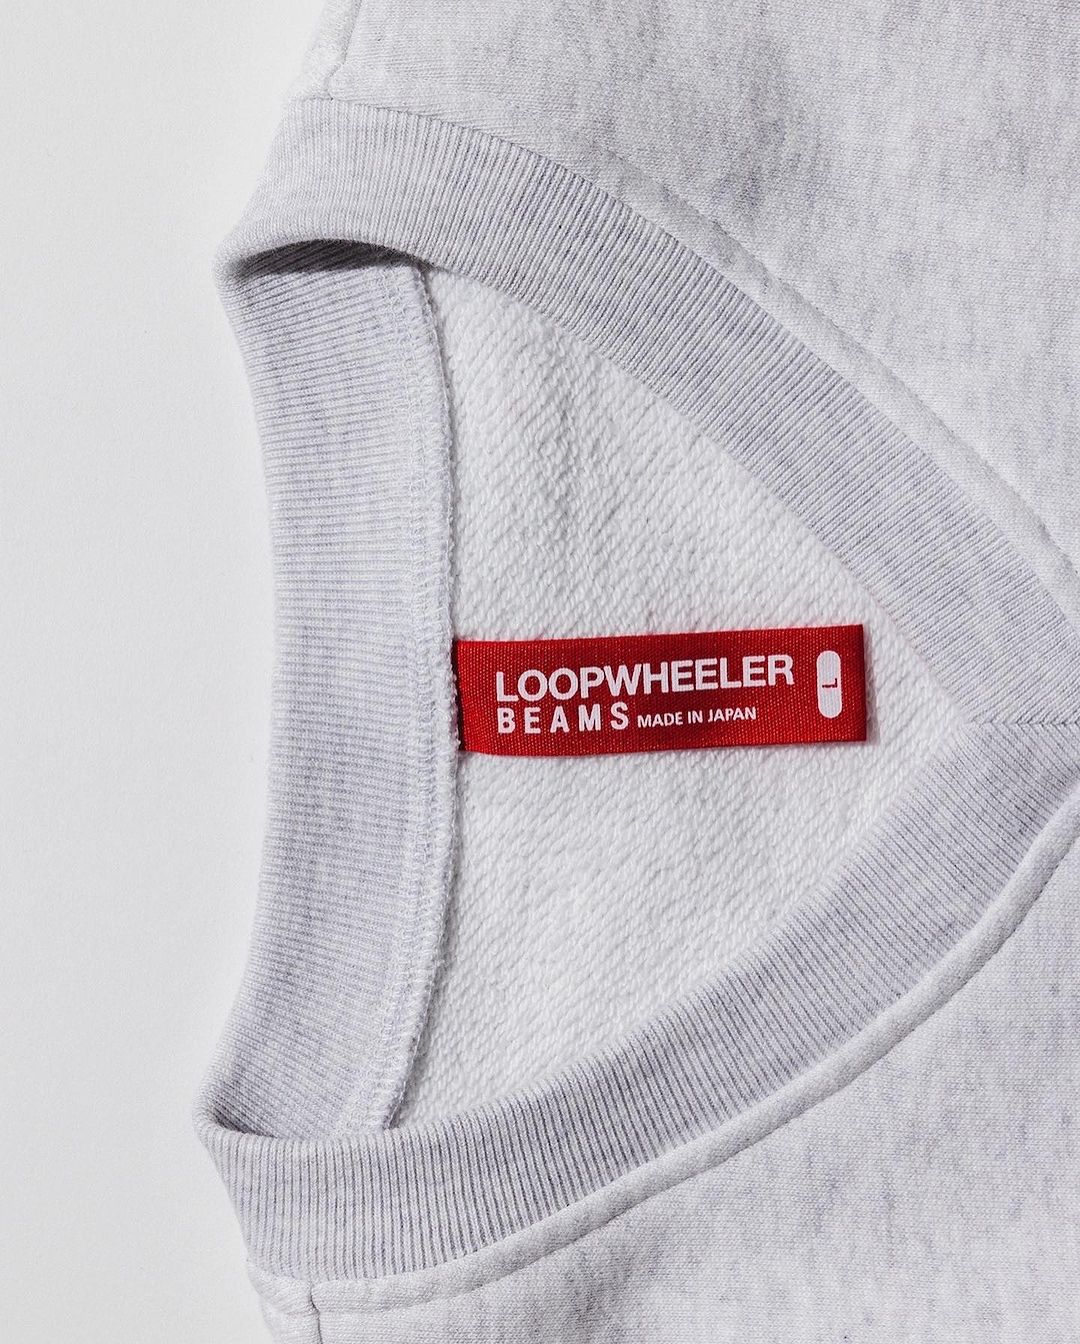 LOOPWHEELER × BEAMS JAPAN “YUKI COLLECTION VOL.2”が2/10 発売 (ループウィラー ビームス ジャパン “ユキ コレクション”)